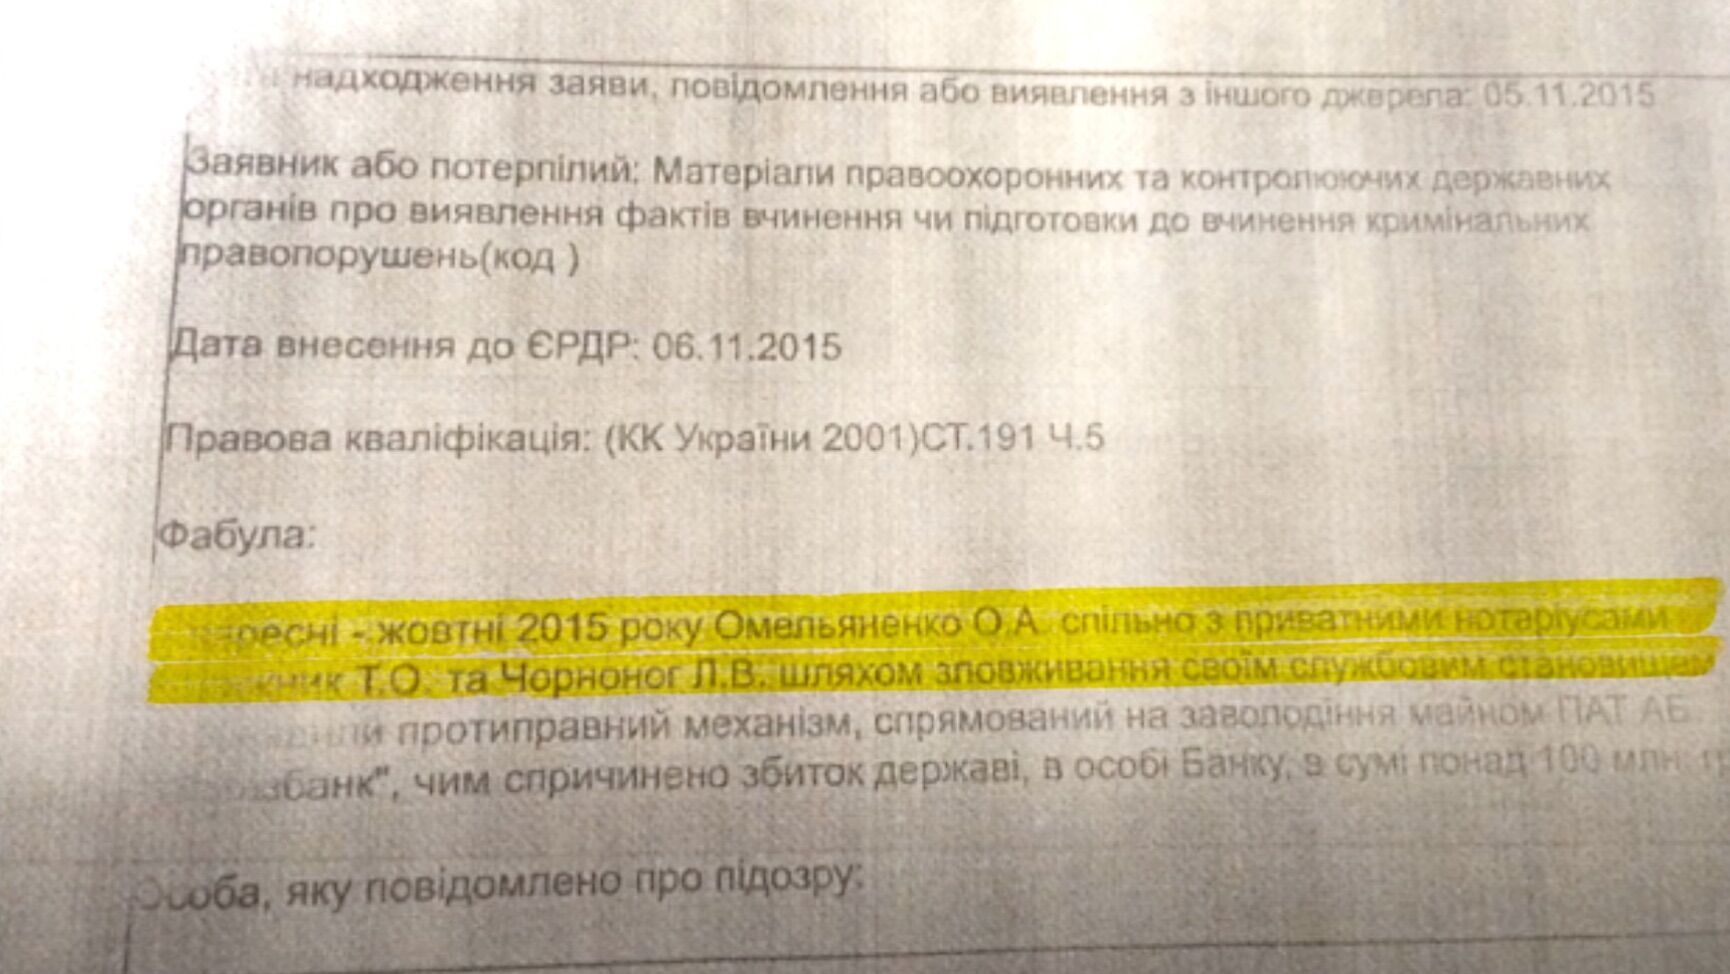 Алексея Омельяненко подозревали в выводе государственных средств через ''Укргазбанк''